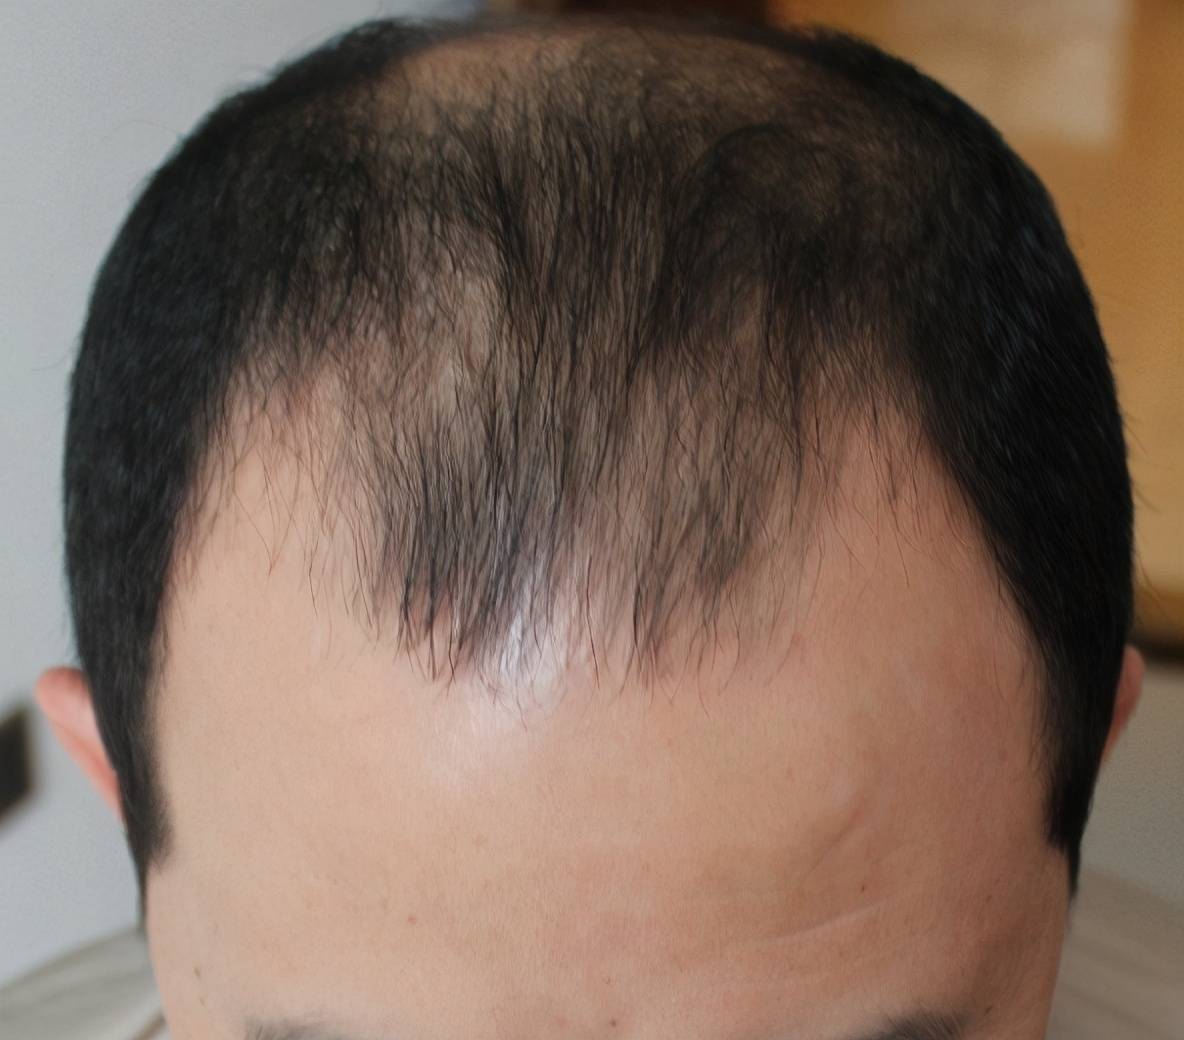 25岁男子脱发6年发际线头顶严重脱发相亲十多次全失败